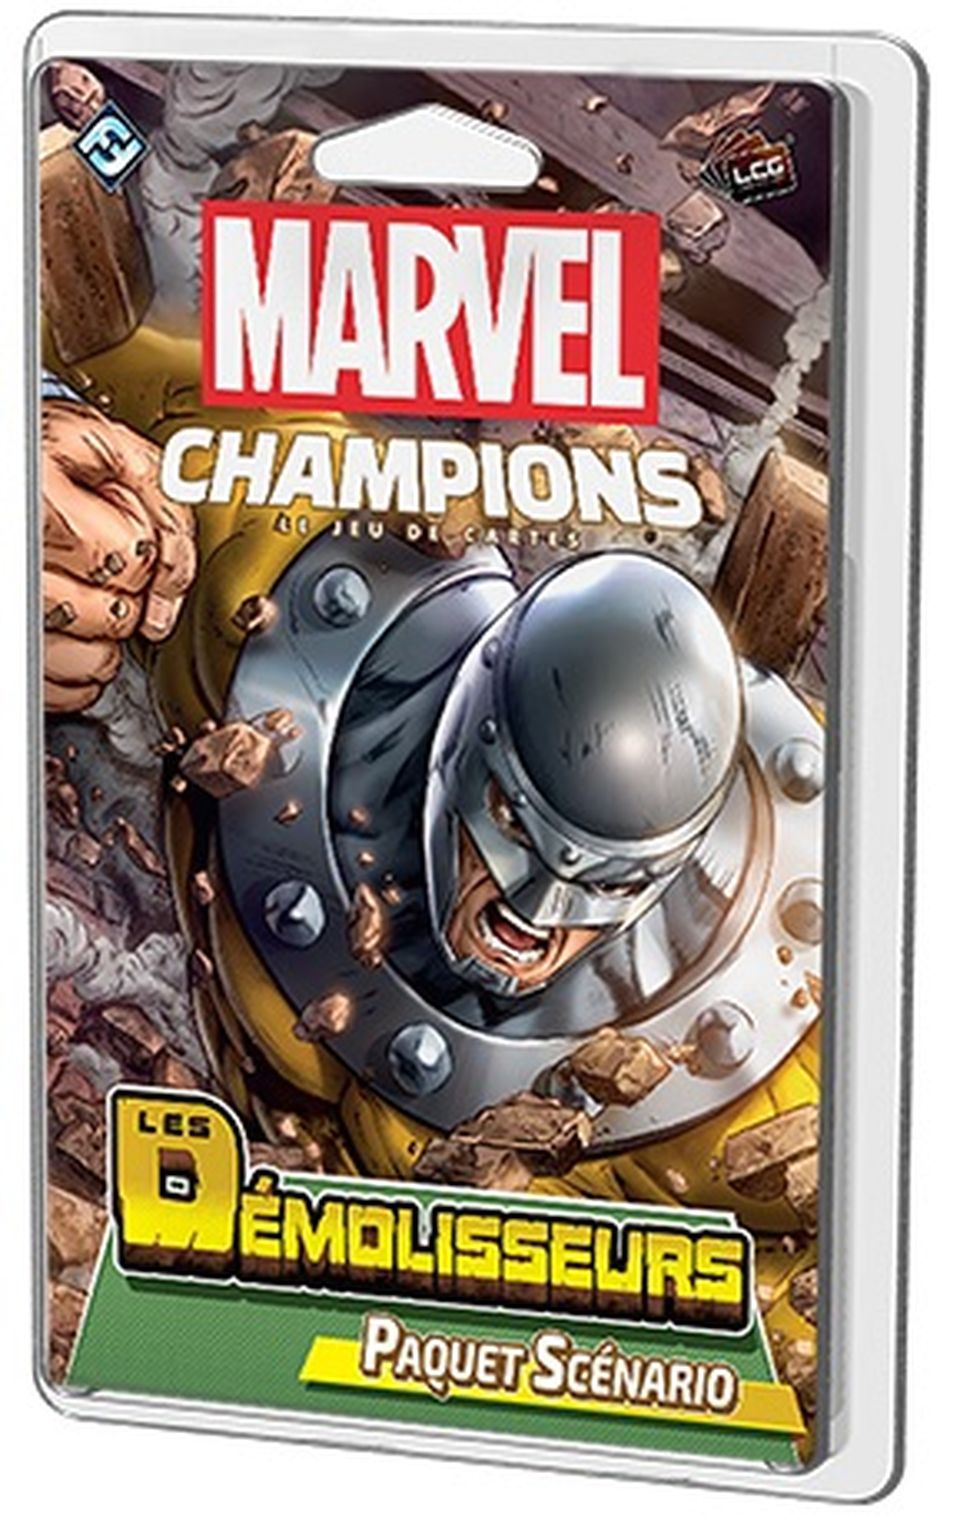 Marvel Champions : Le jeu de cartes - Les Démolisseurs (Paquet Scénario) image